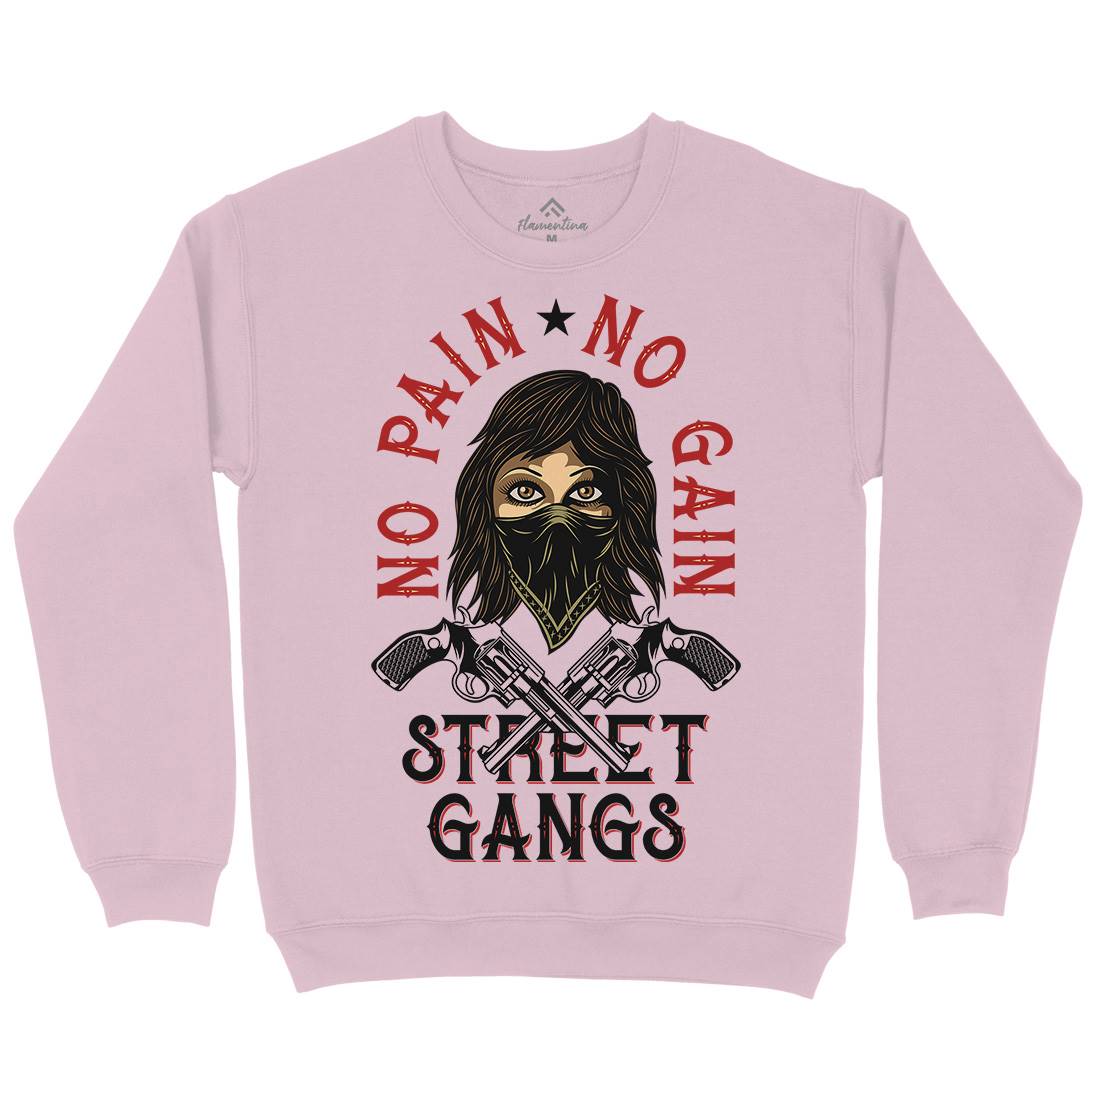 Street Gangs Kids Crew Neck Sweatshirt Retro D986